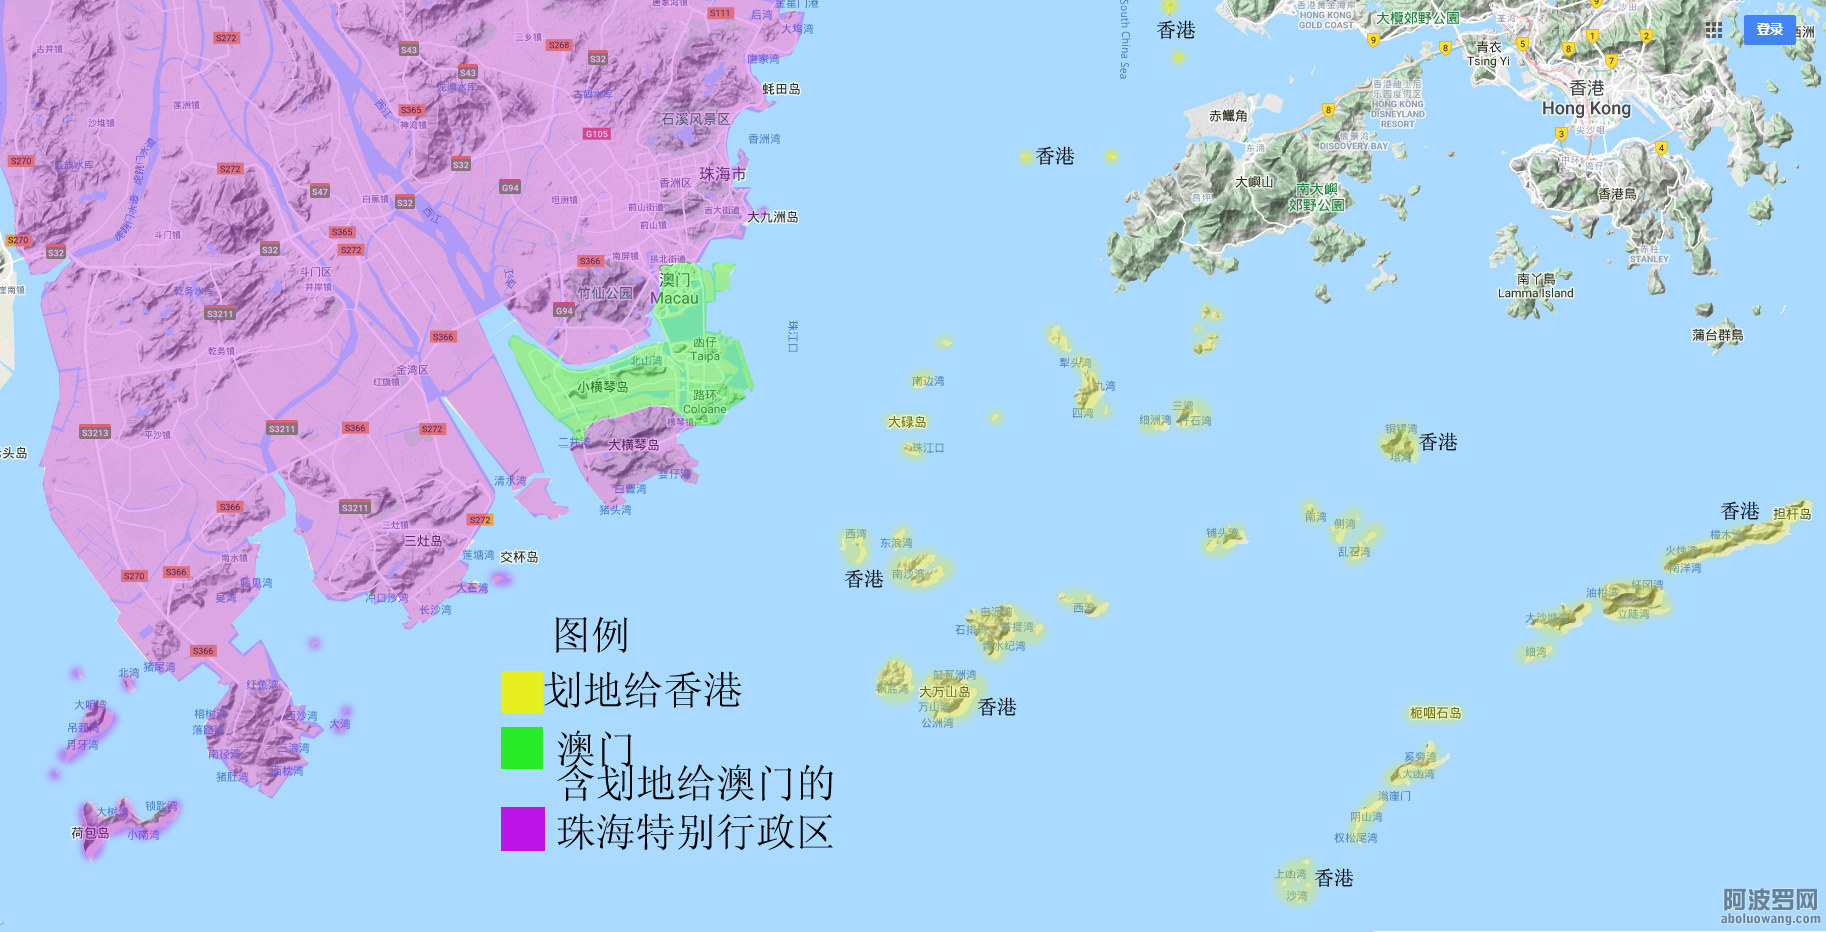 6香港以南岛屿 澳门 珠海.jpg